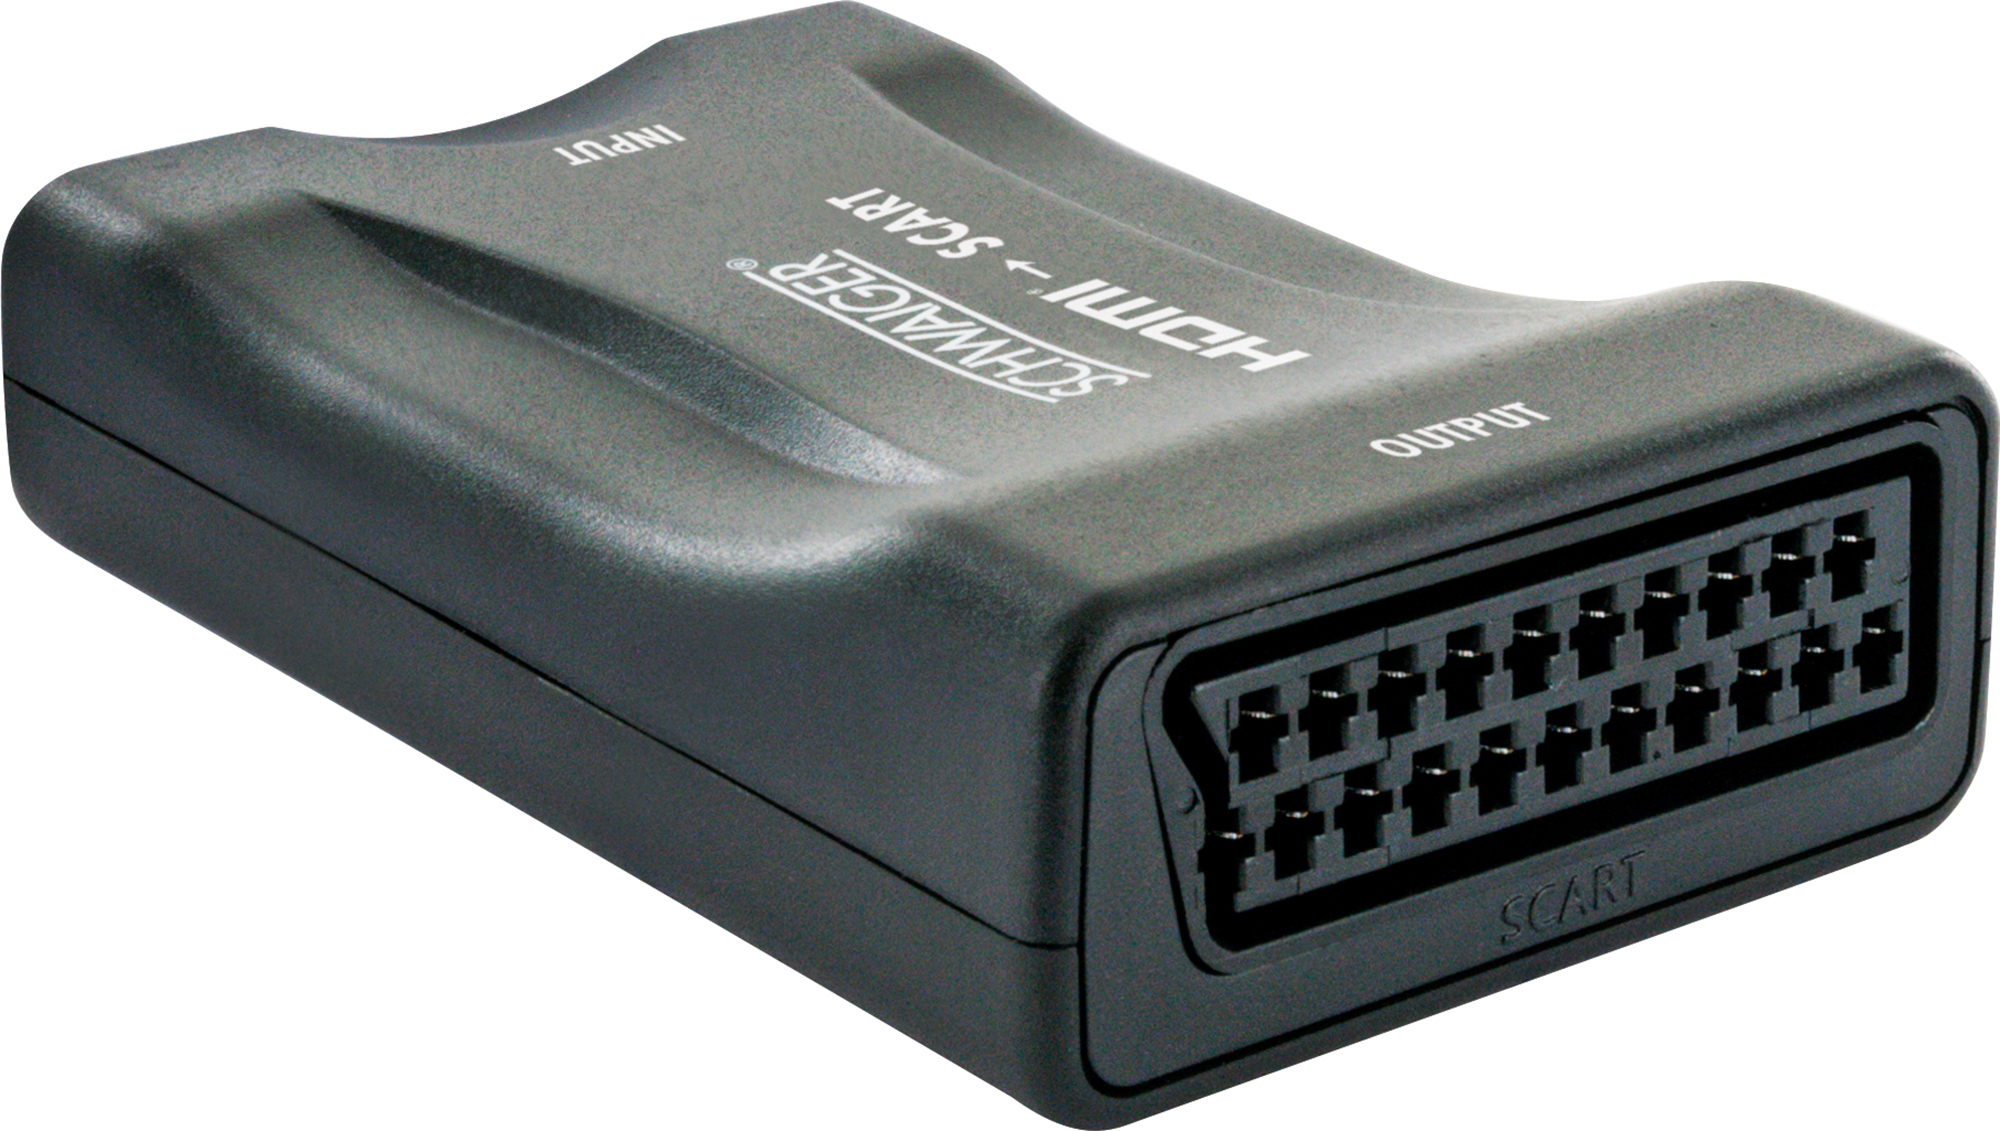 -HDMSCA02 HDMI-Scart-Konverter 533- SCHWAIGER